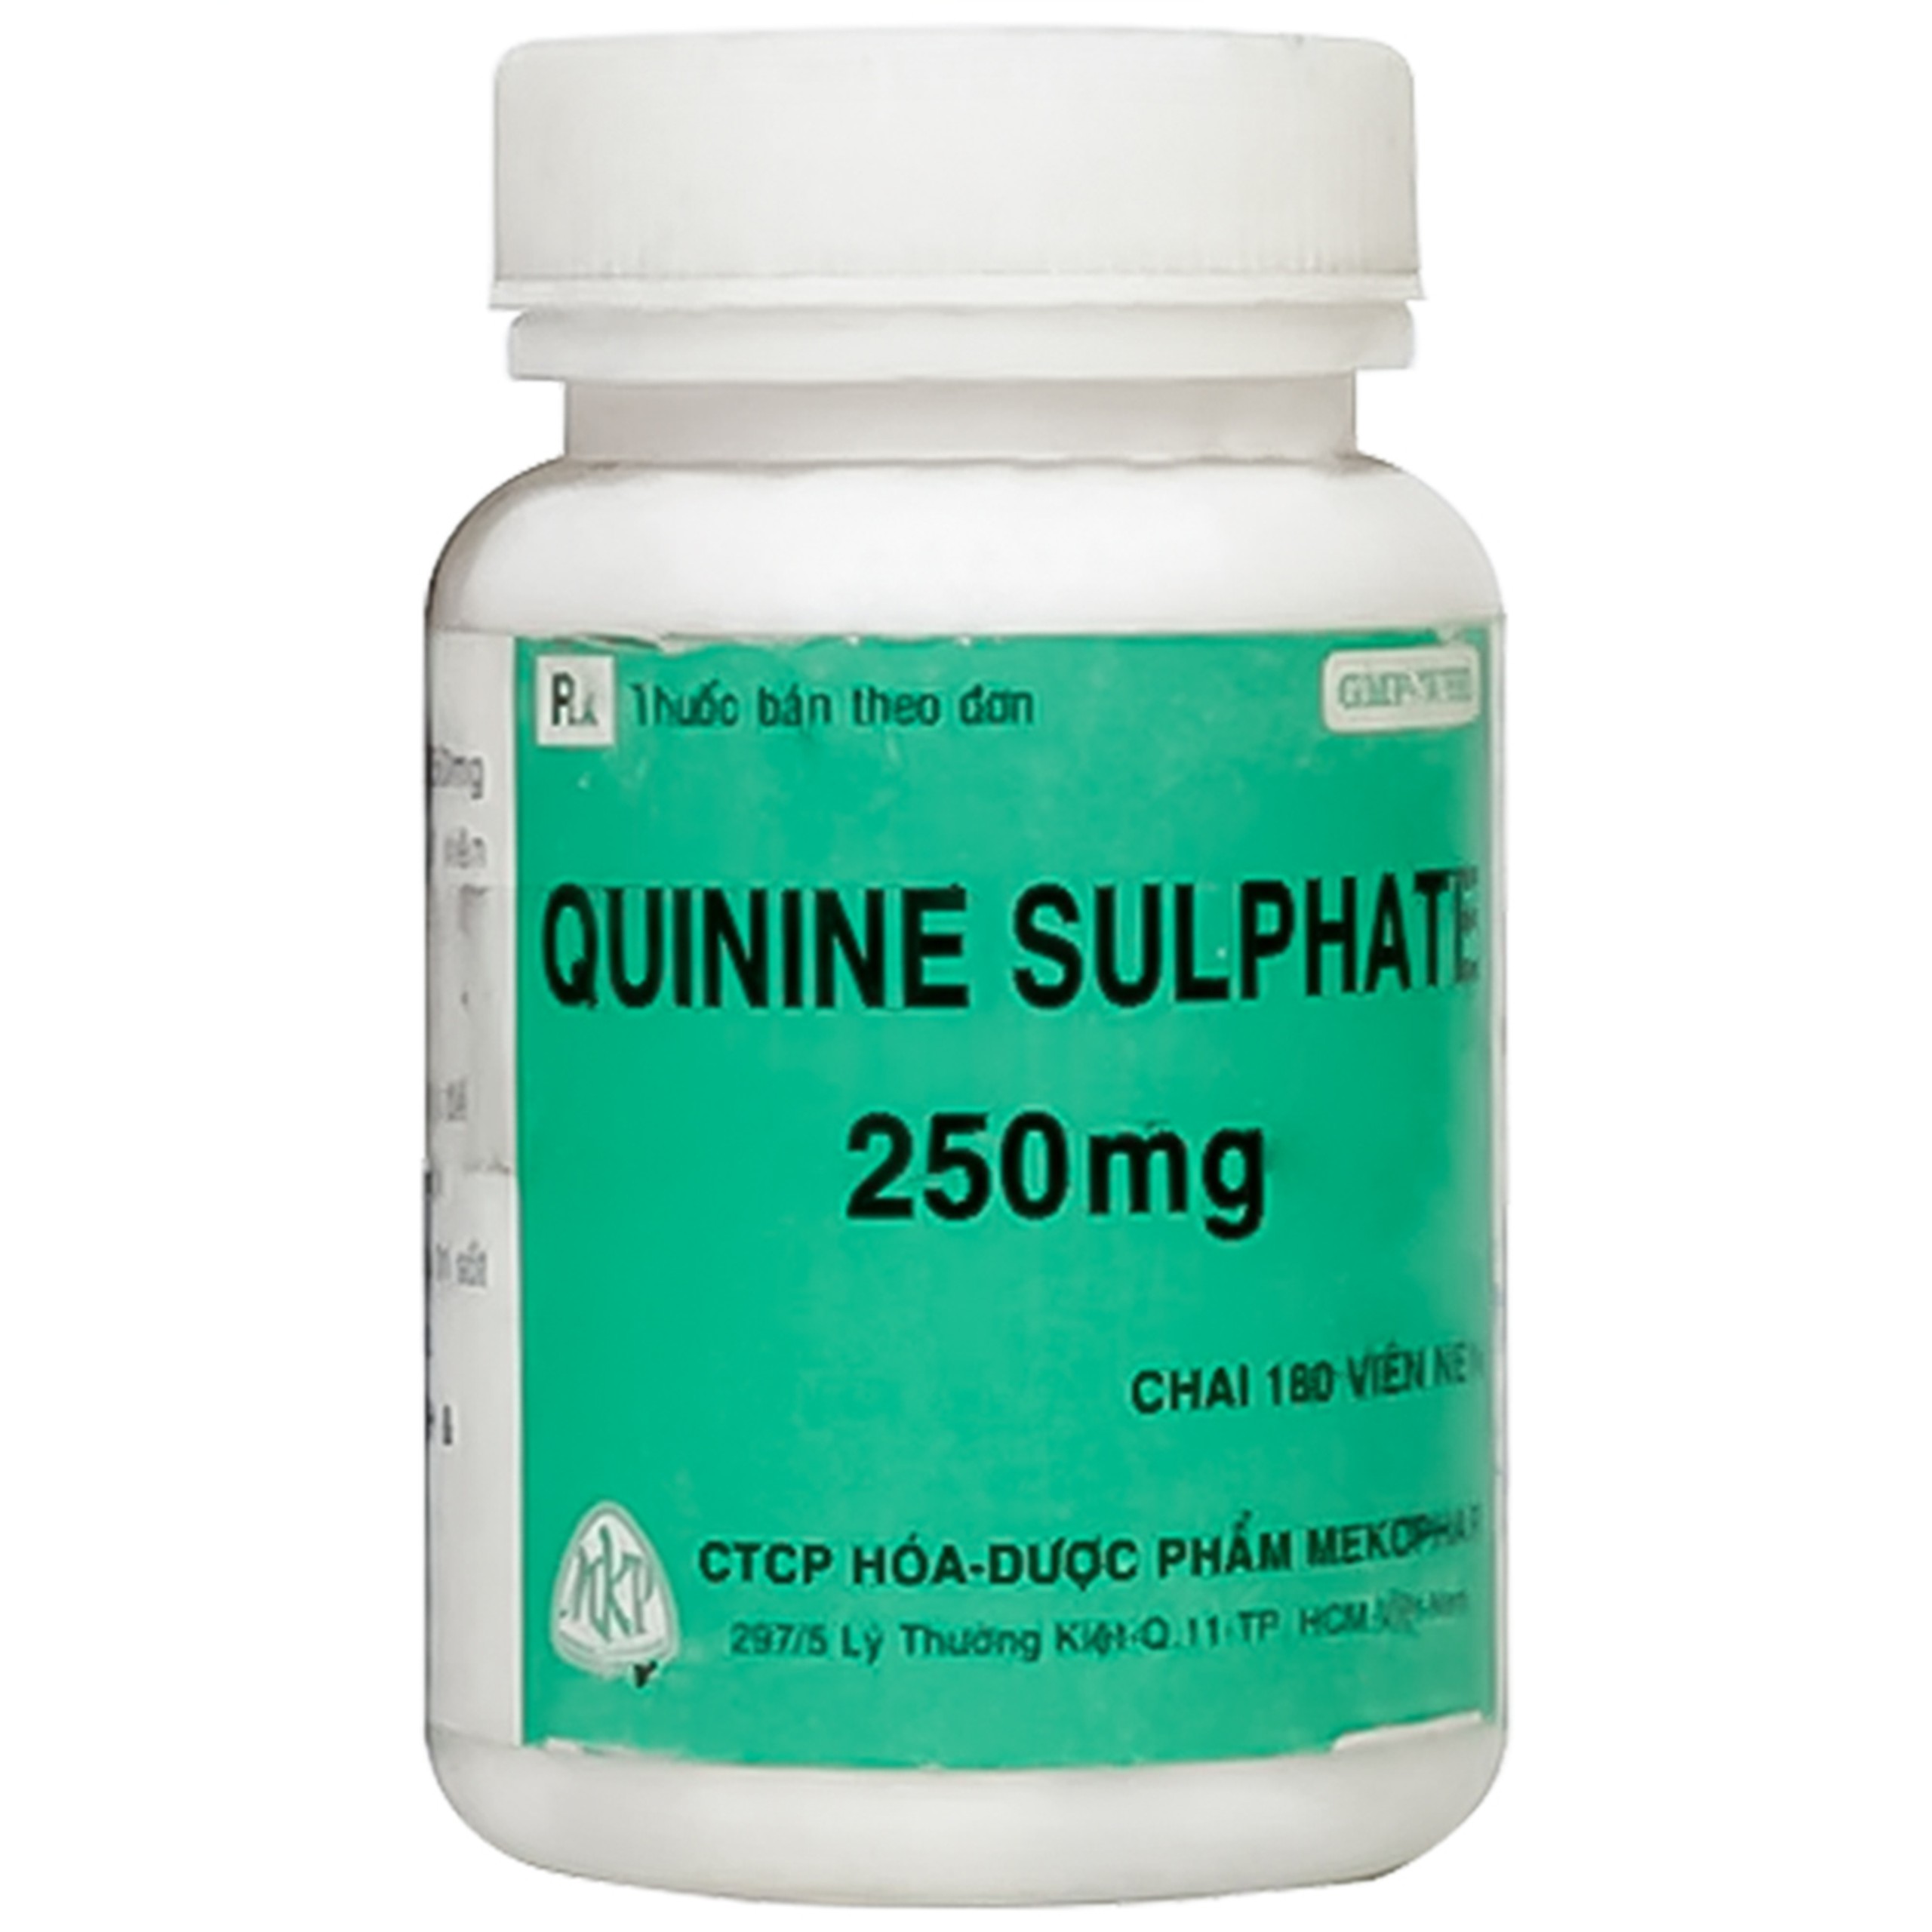 Thuốc Quinine Sulphate 250mg Mekophar điều trị sốt rét (180 viên)